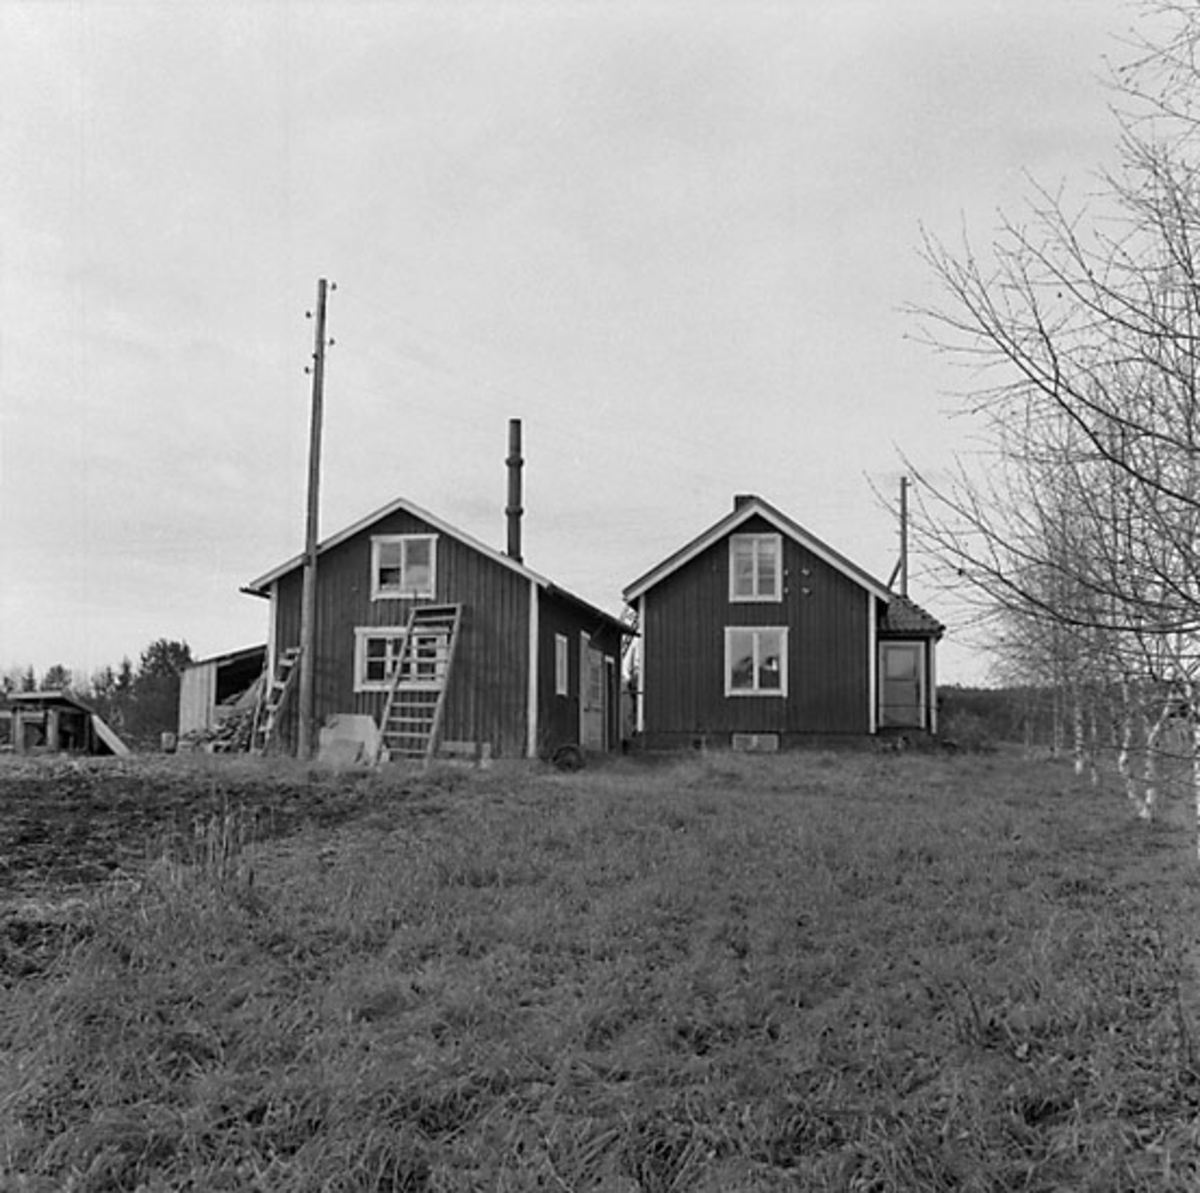 Fotografiet är taget: 1957

Båtbyggeri norra Sverige innehåller intreörer, 165 s.v. kop.
18 neg. till 18 av kop. finns i neg.ark. nr. 1929:1-2 filmnr. 119 och 120.
Format 6x6 10x10